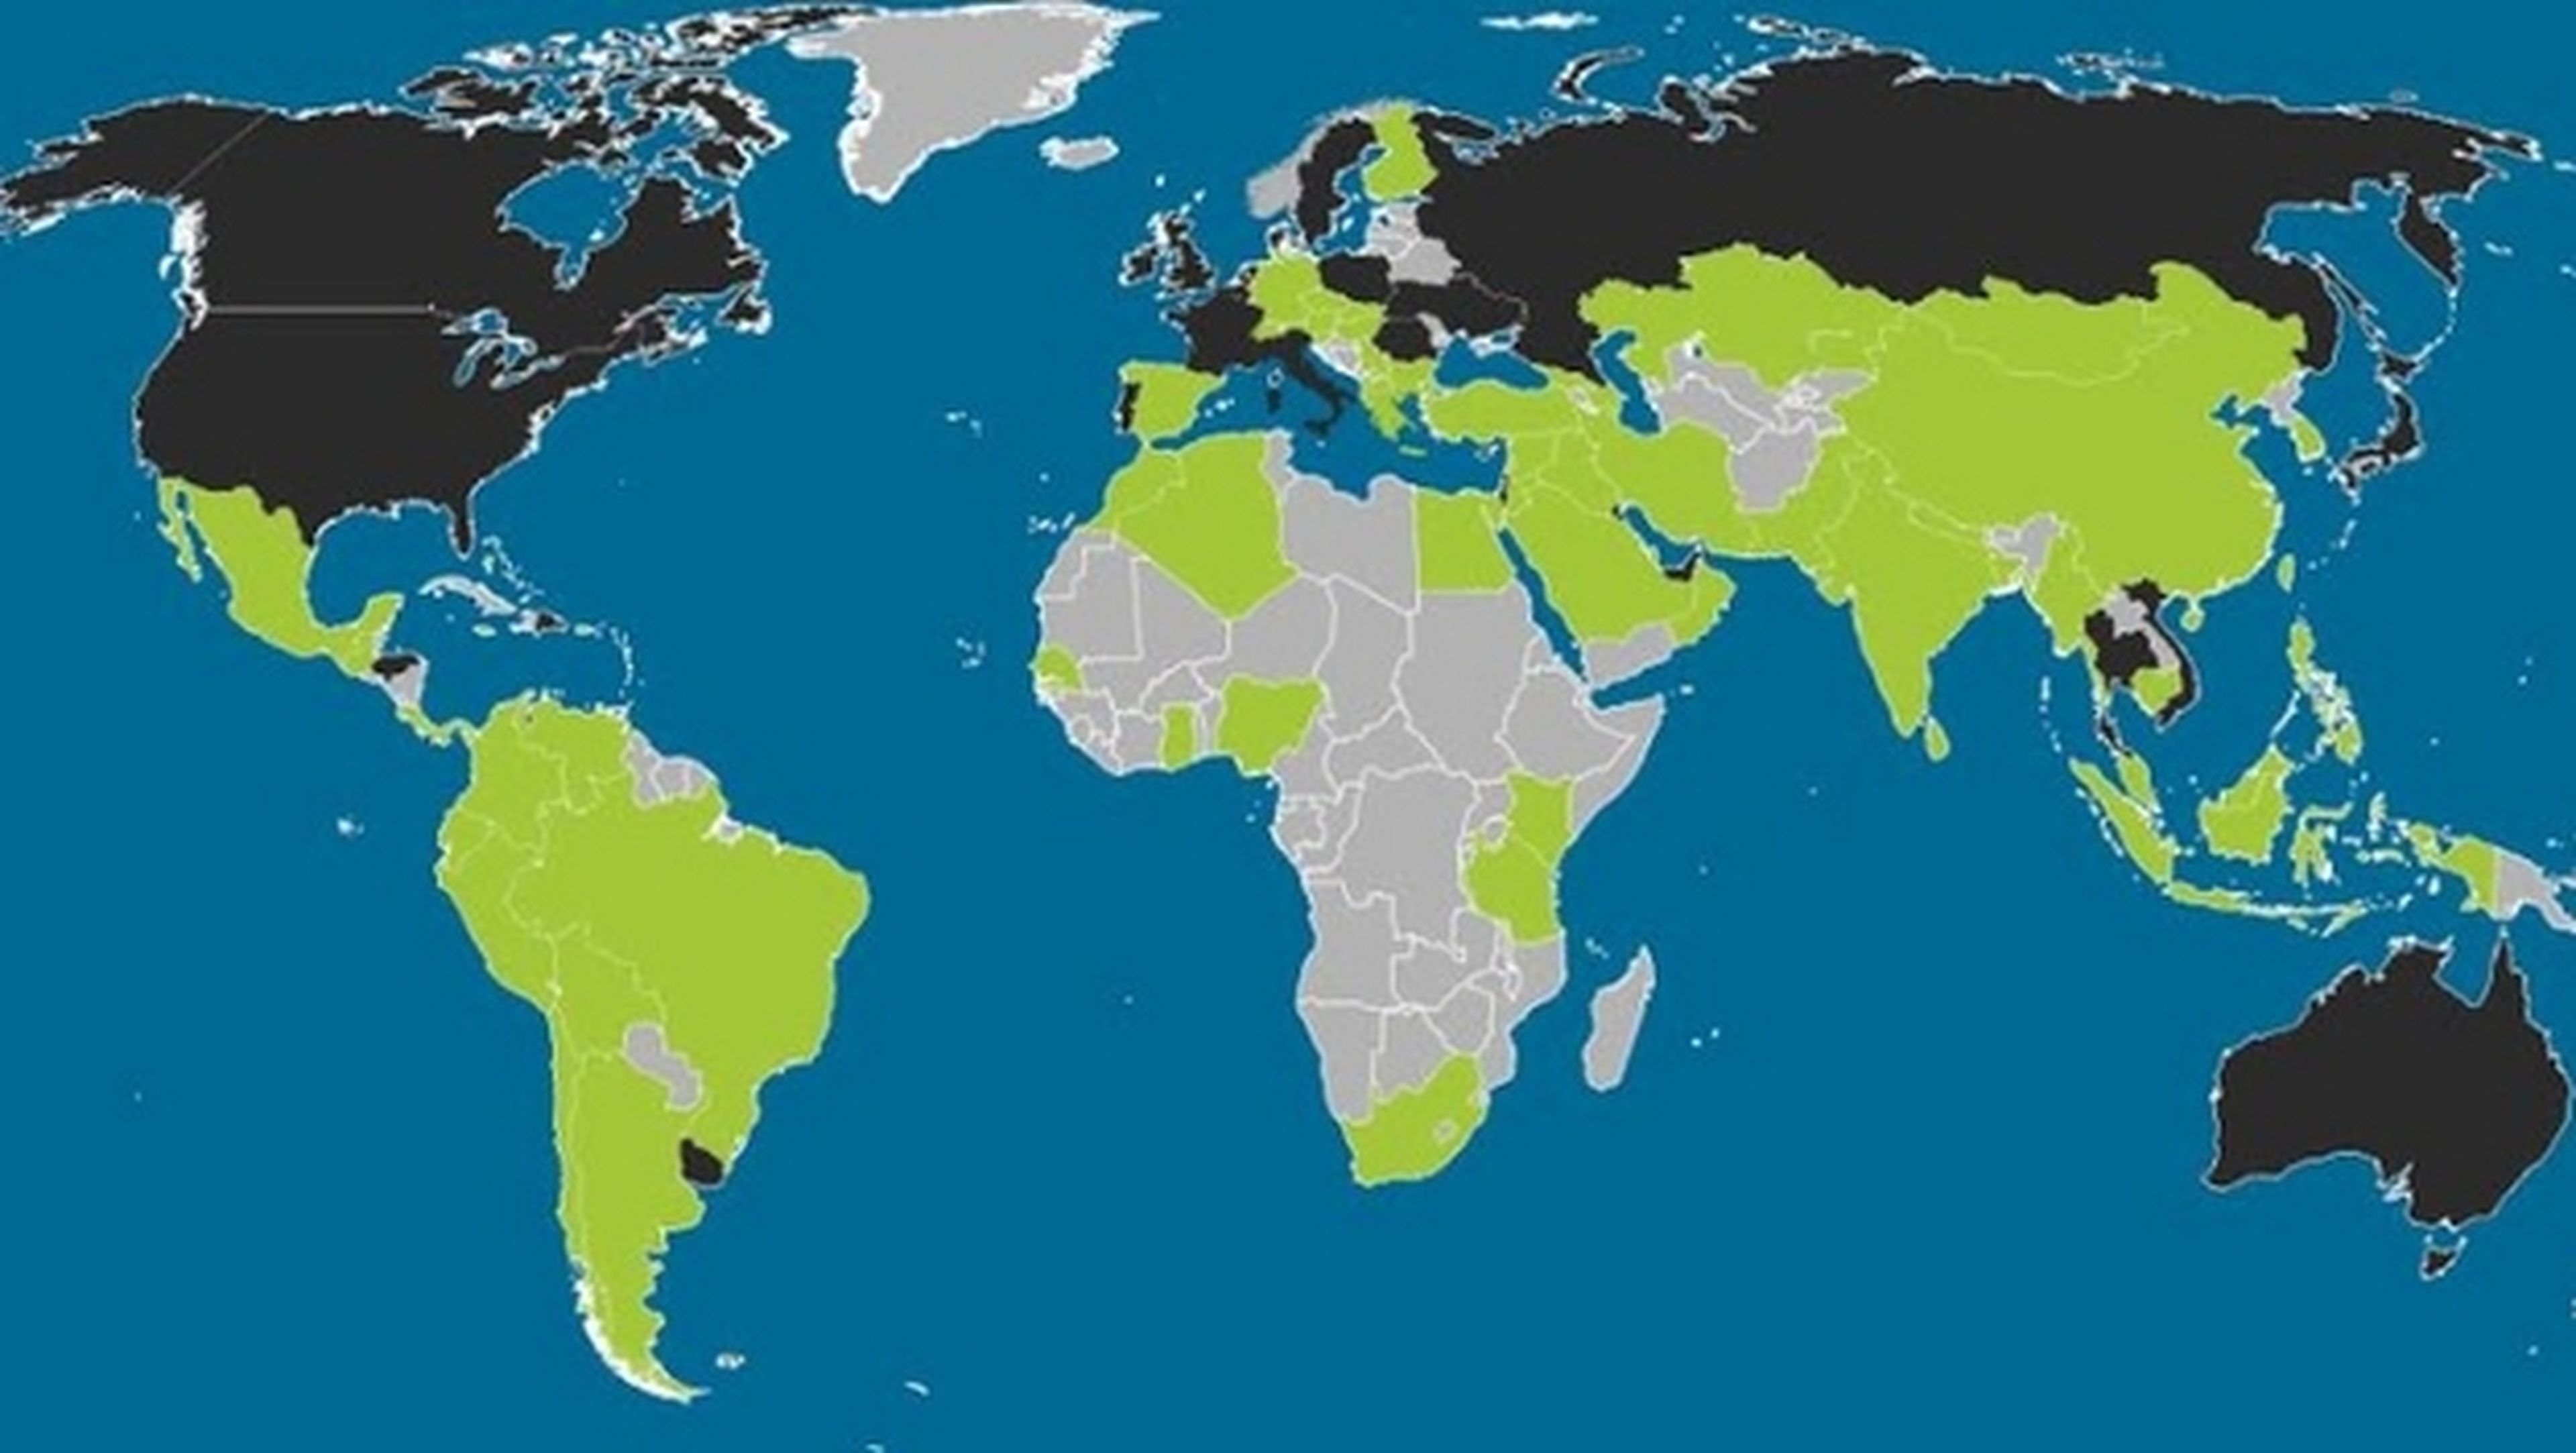 Mapamundi de los sistemas operativos móviles, con la implantación de Android, iOS, Blackberry y Windows Phone en todos los países del mundo.